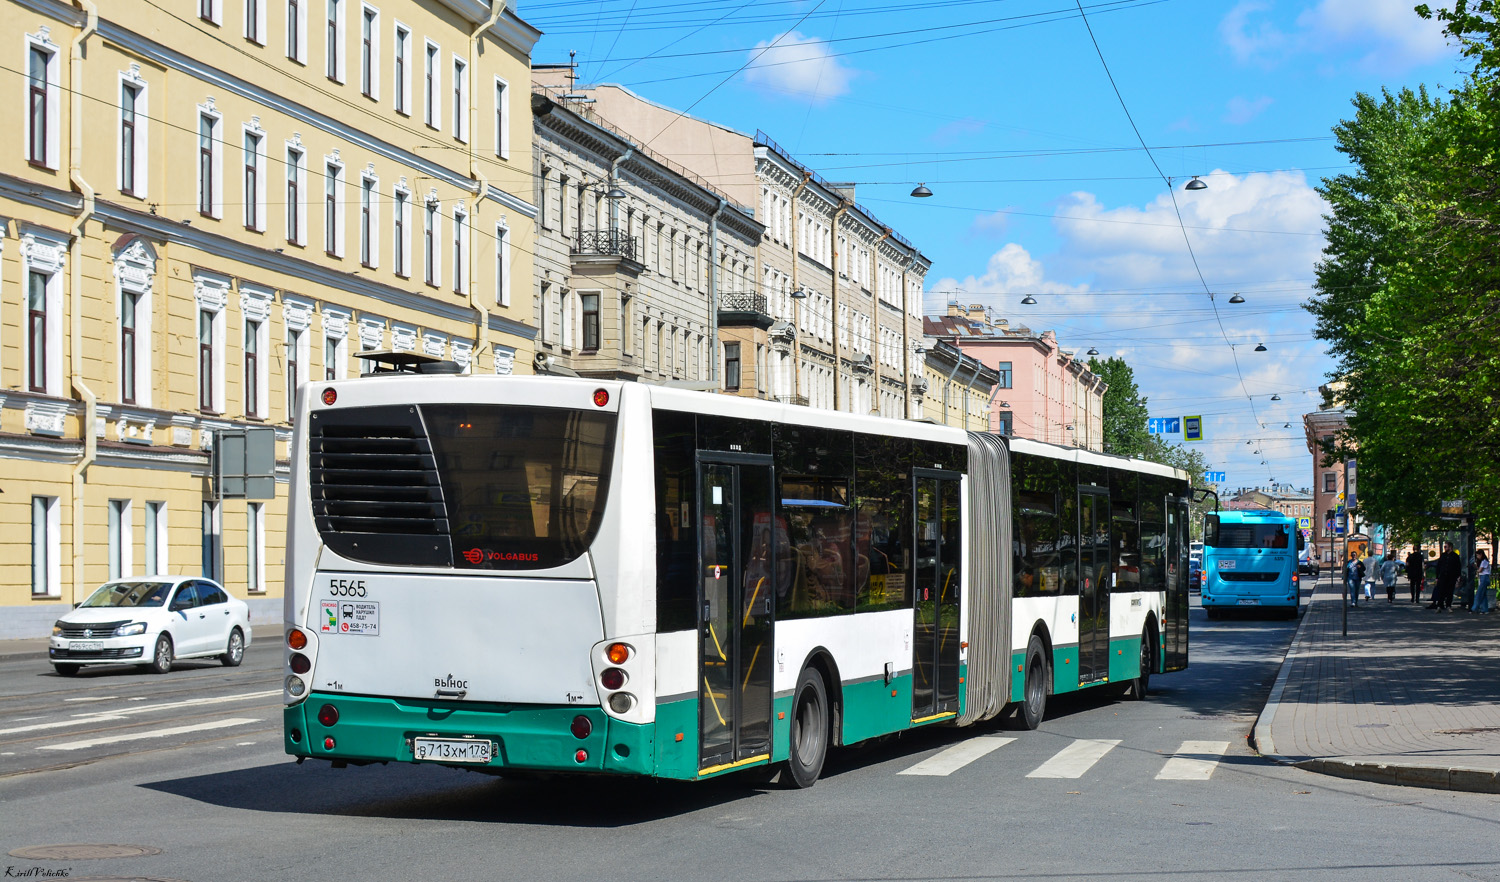 Szentpétervár, Volgabus-6271.00 sz.: 5565